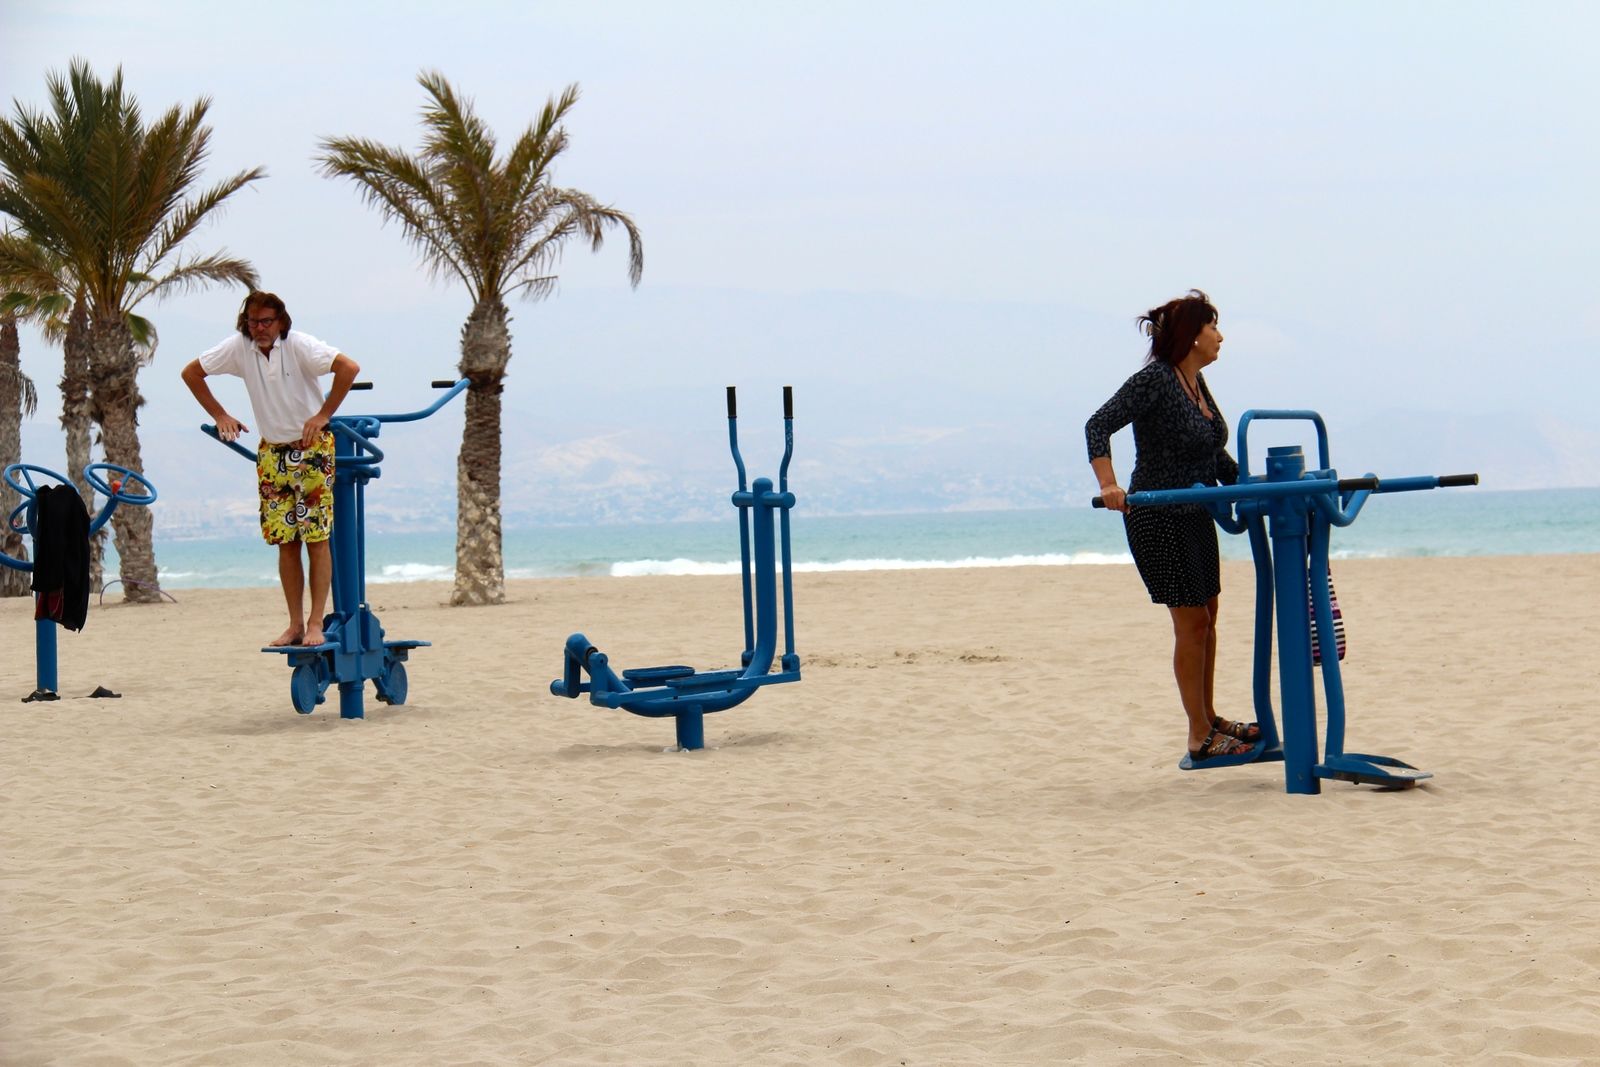 tennis-tourist-playa-san-juan-exercise-machines-on-beach-alicante-spain-beach-teri-church